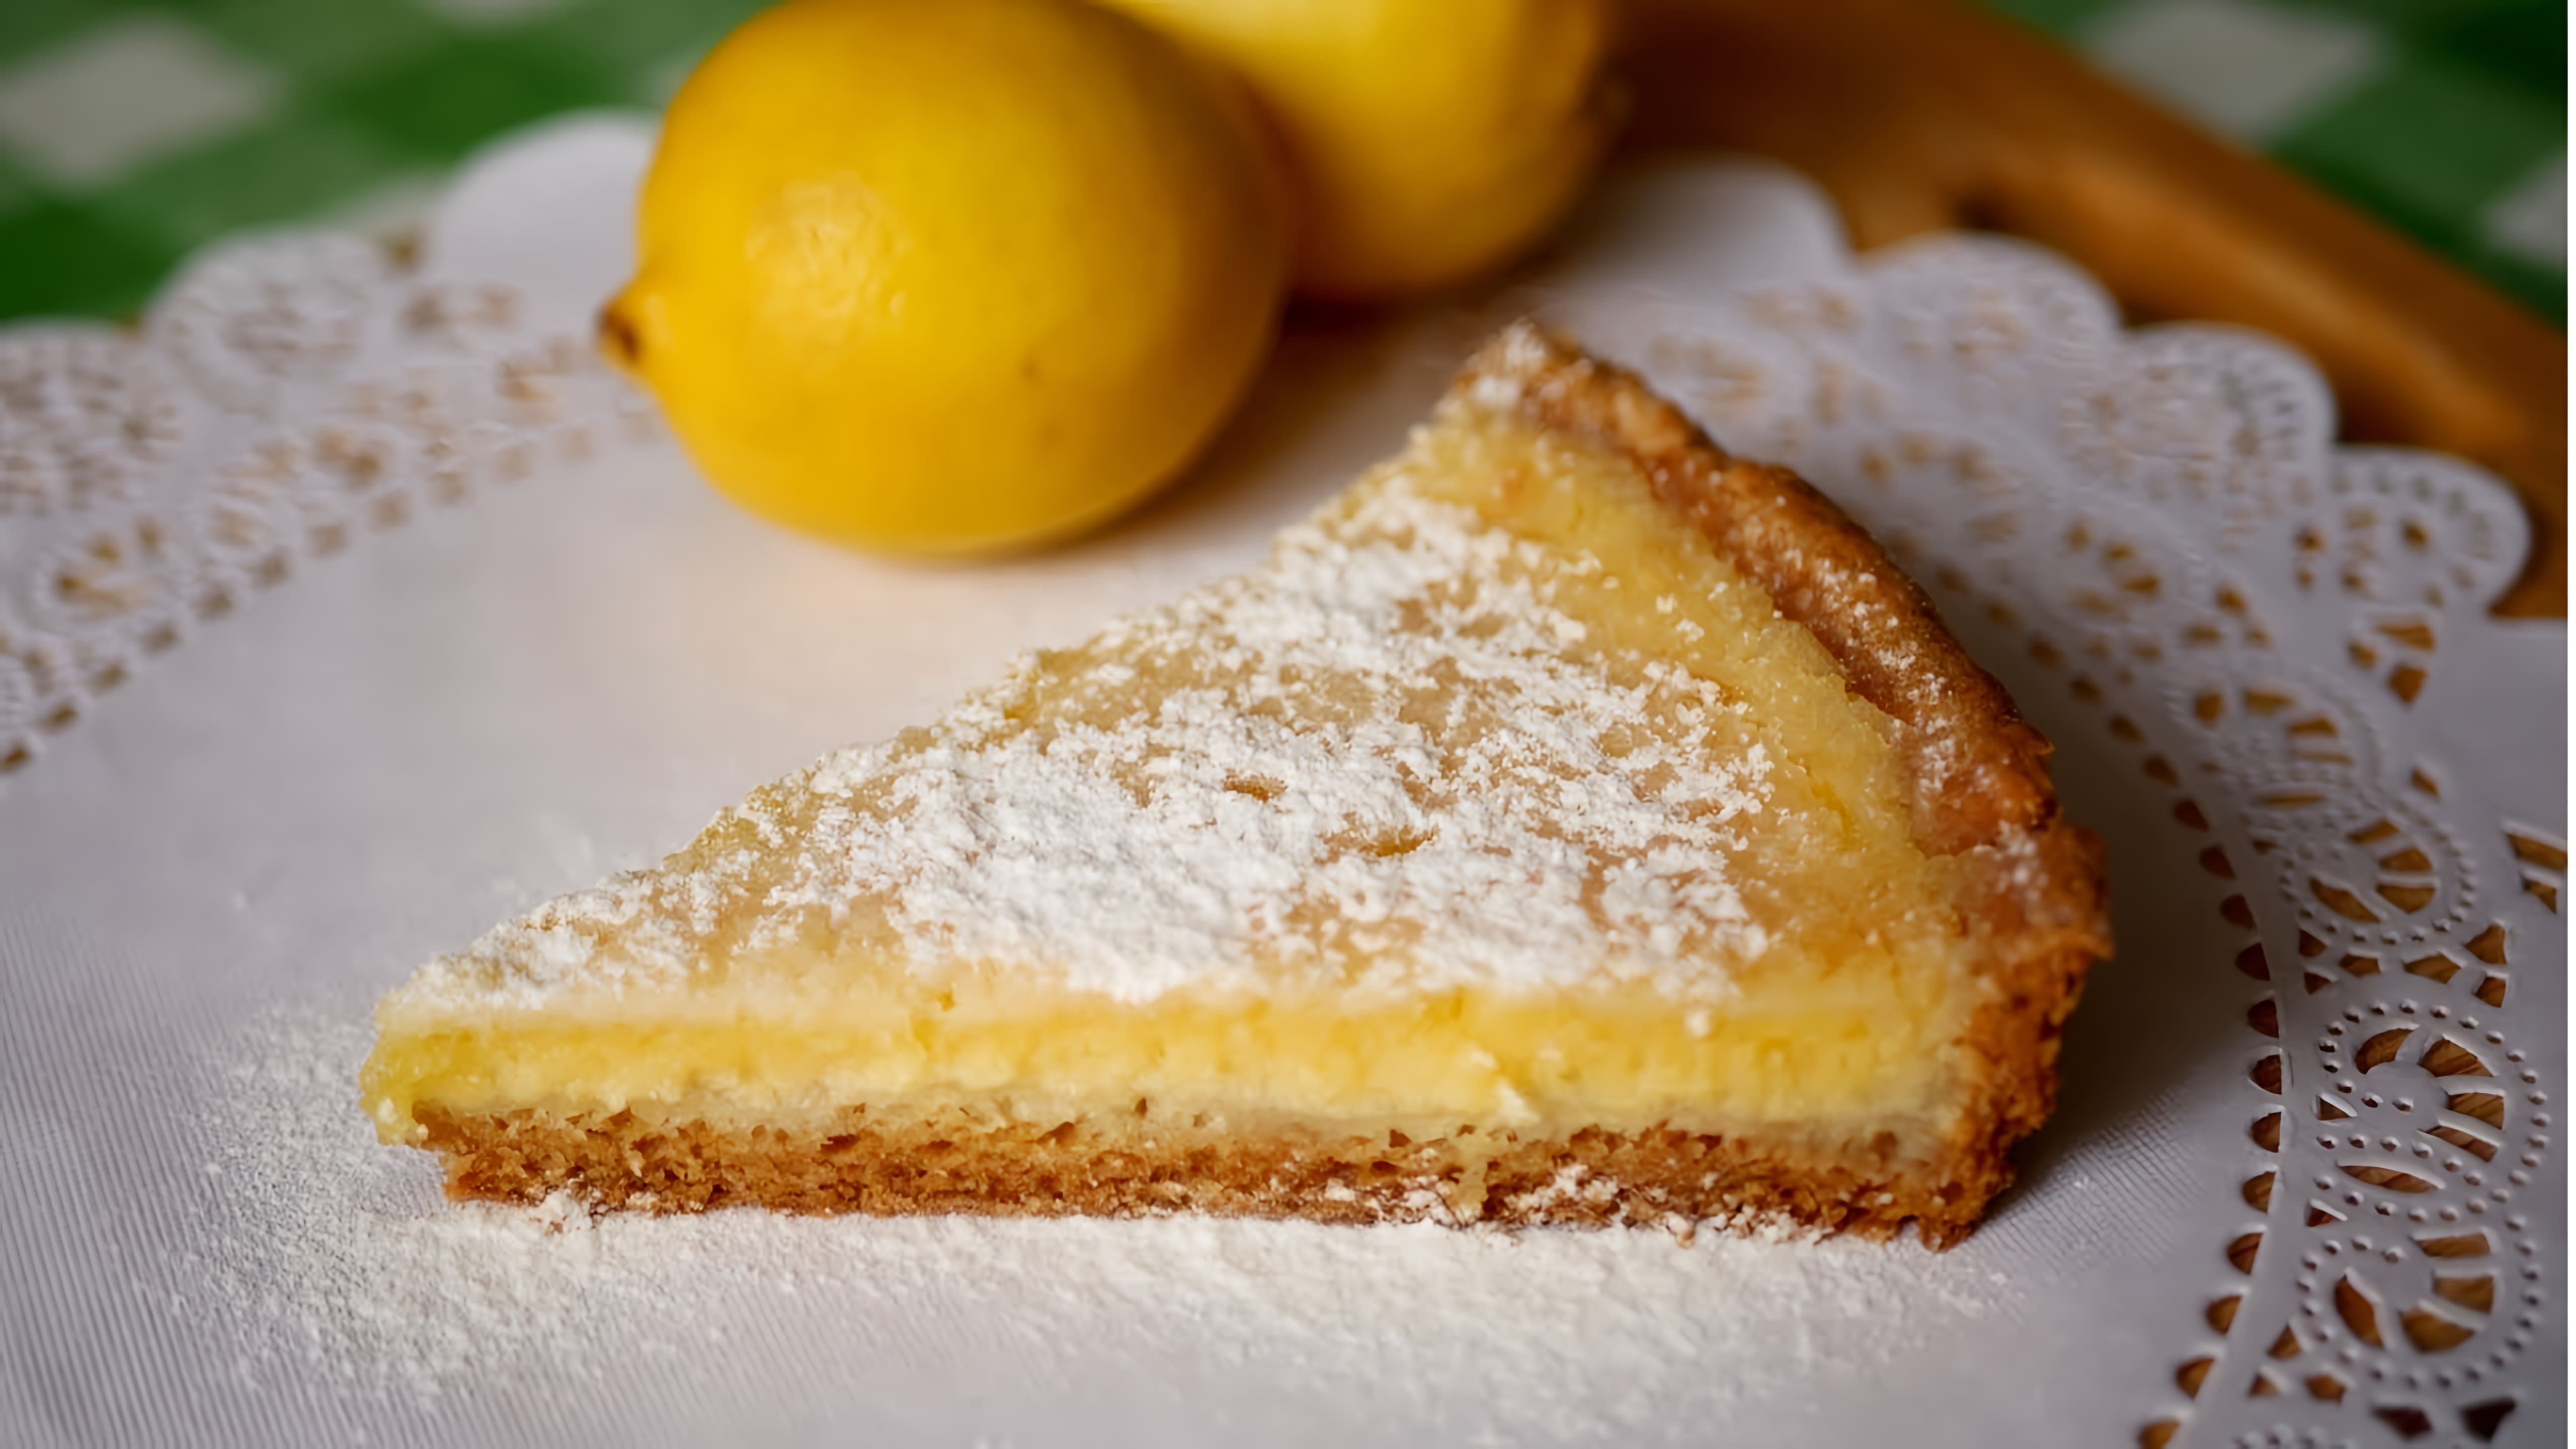 В этом видео демонстрируется процесс приготовления лимонного пирога с нежной кремовой начинкой